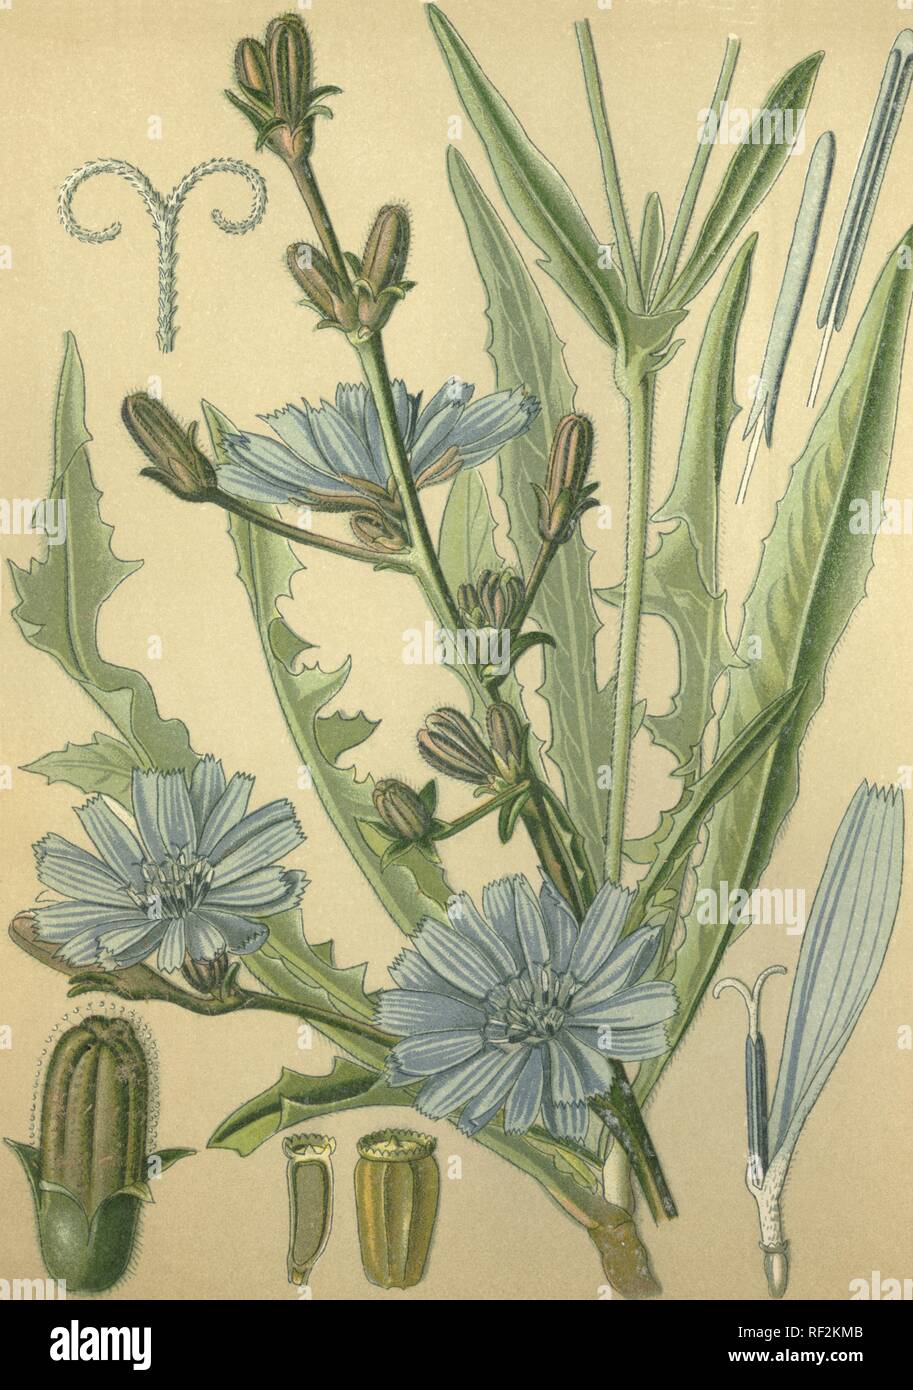 Chicorée commune, Succory ou marins bleu (Cichorium intybus), plante médicinale, datée de 1880 chromolithographie historique Banque D'Images